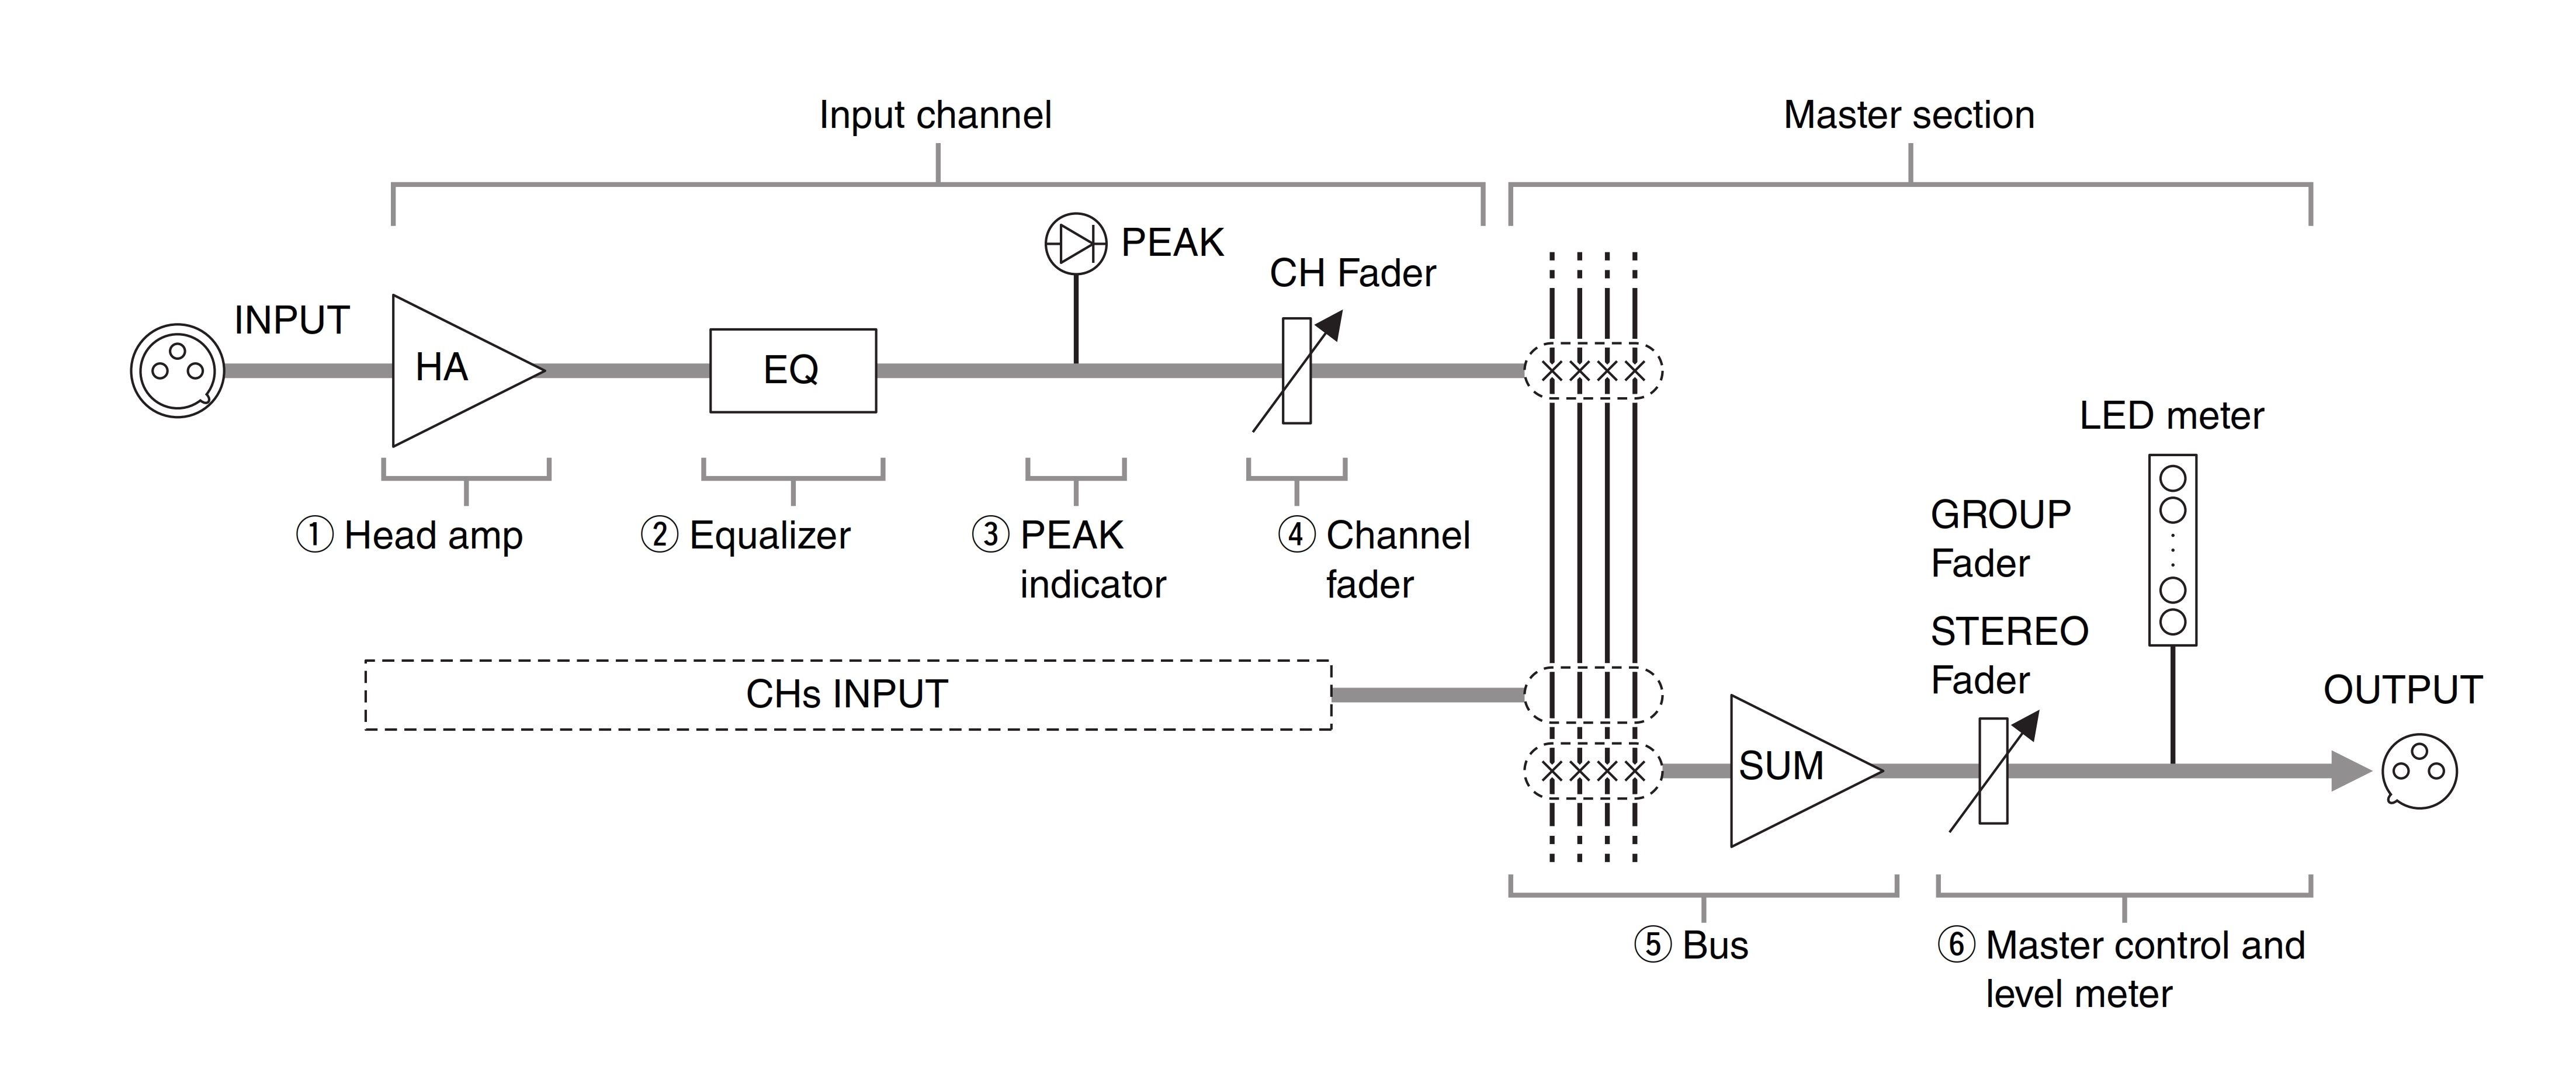 Схема маршрутизации входного сигнала